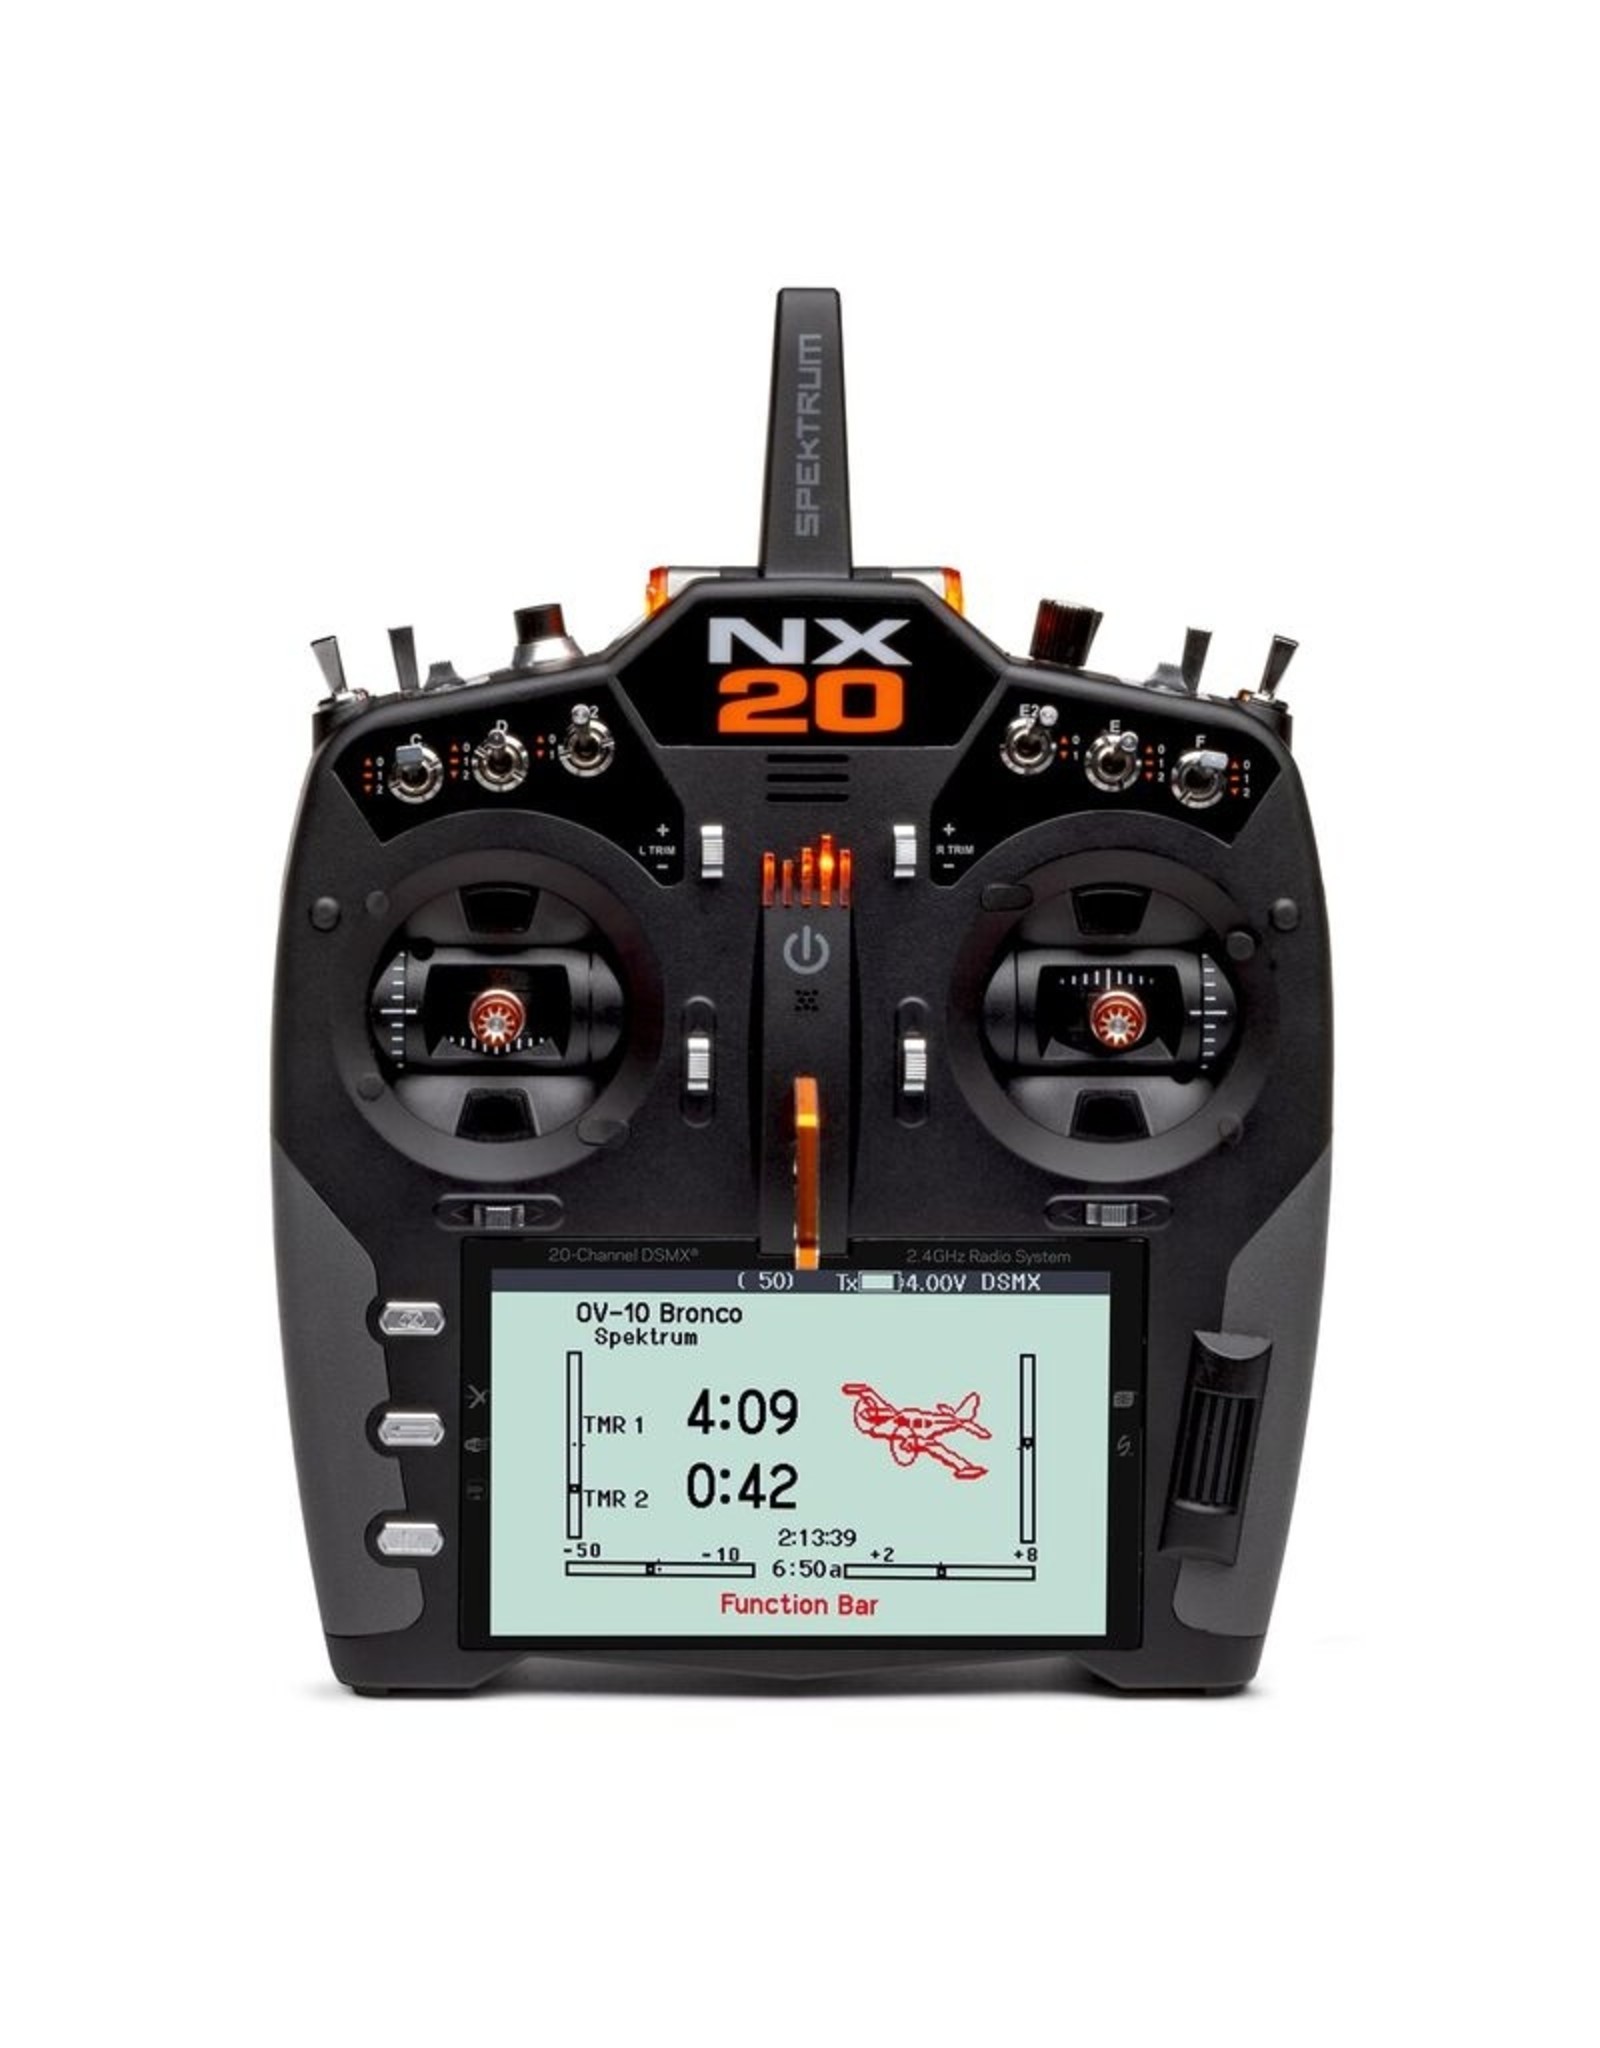 SPMR20500 NX20 20- CHANNEL 2.4GHZ DSMX RADIO